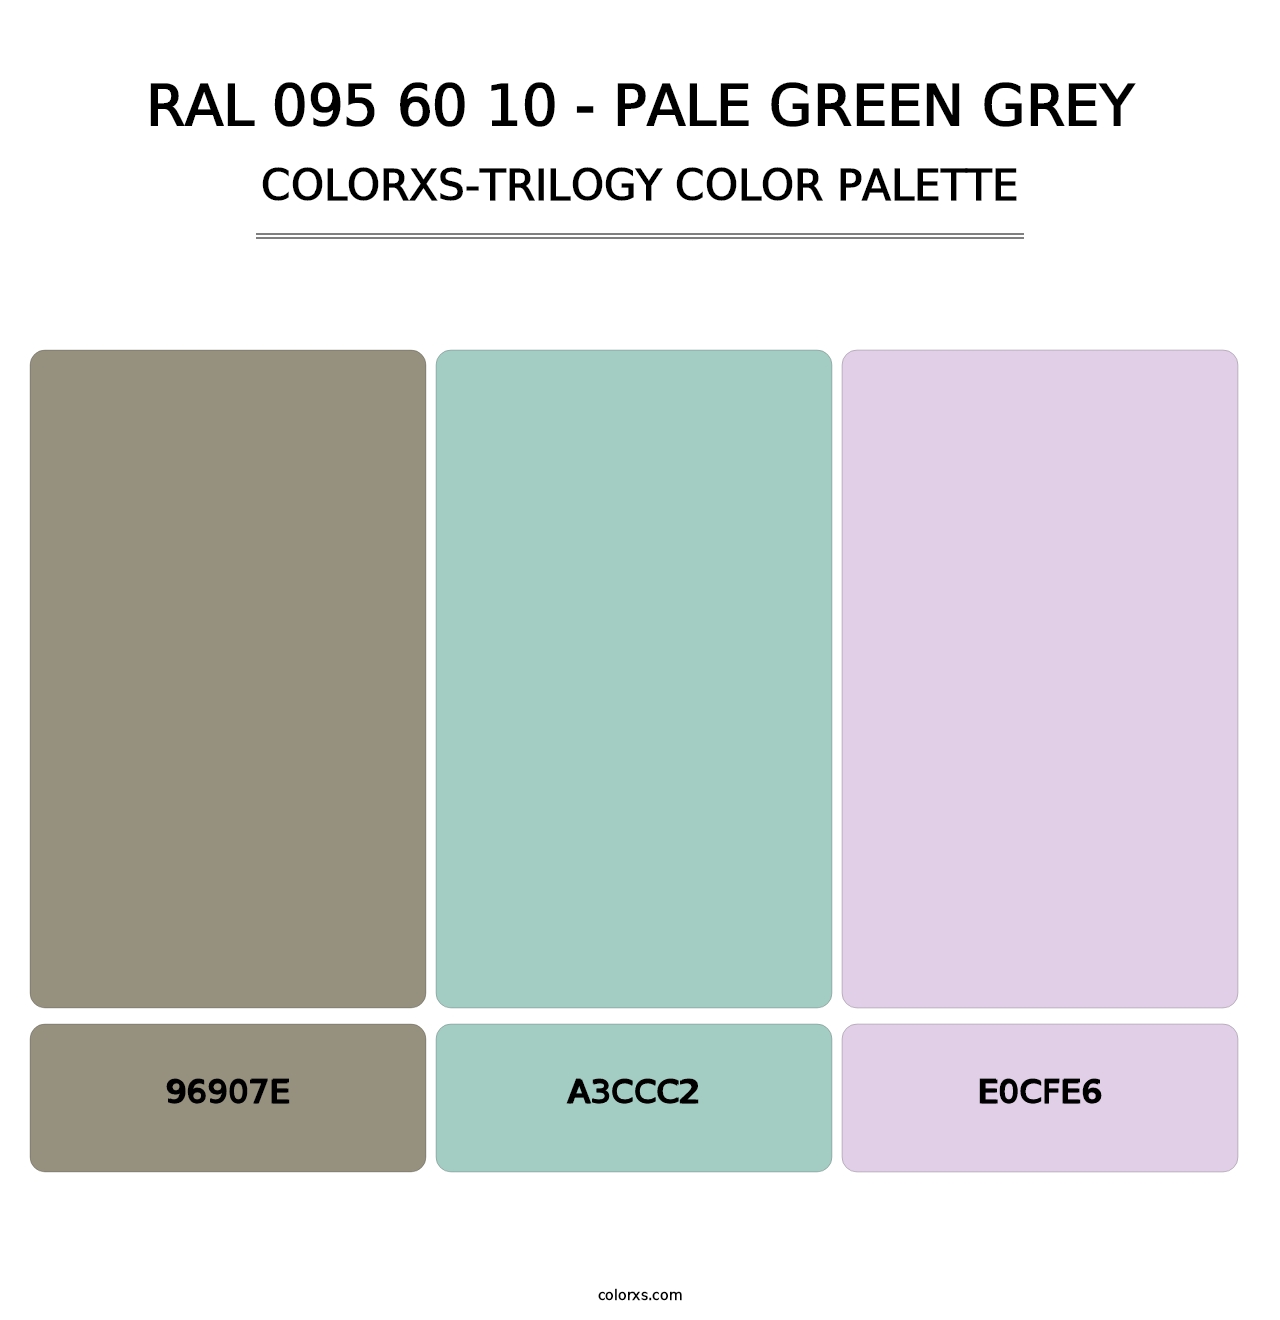 RAL 095 60 10 - Pale Green Grey - Colorxs Trilogy Palette